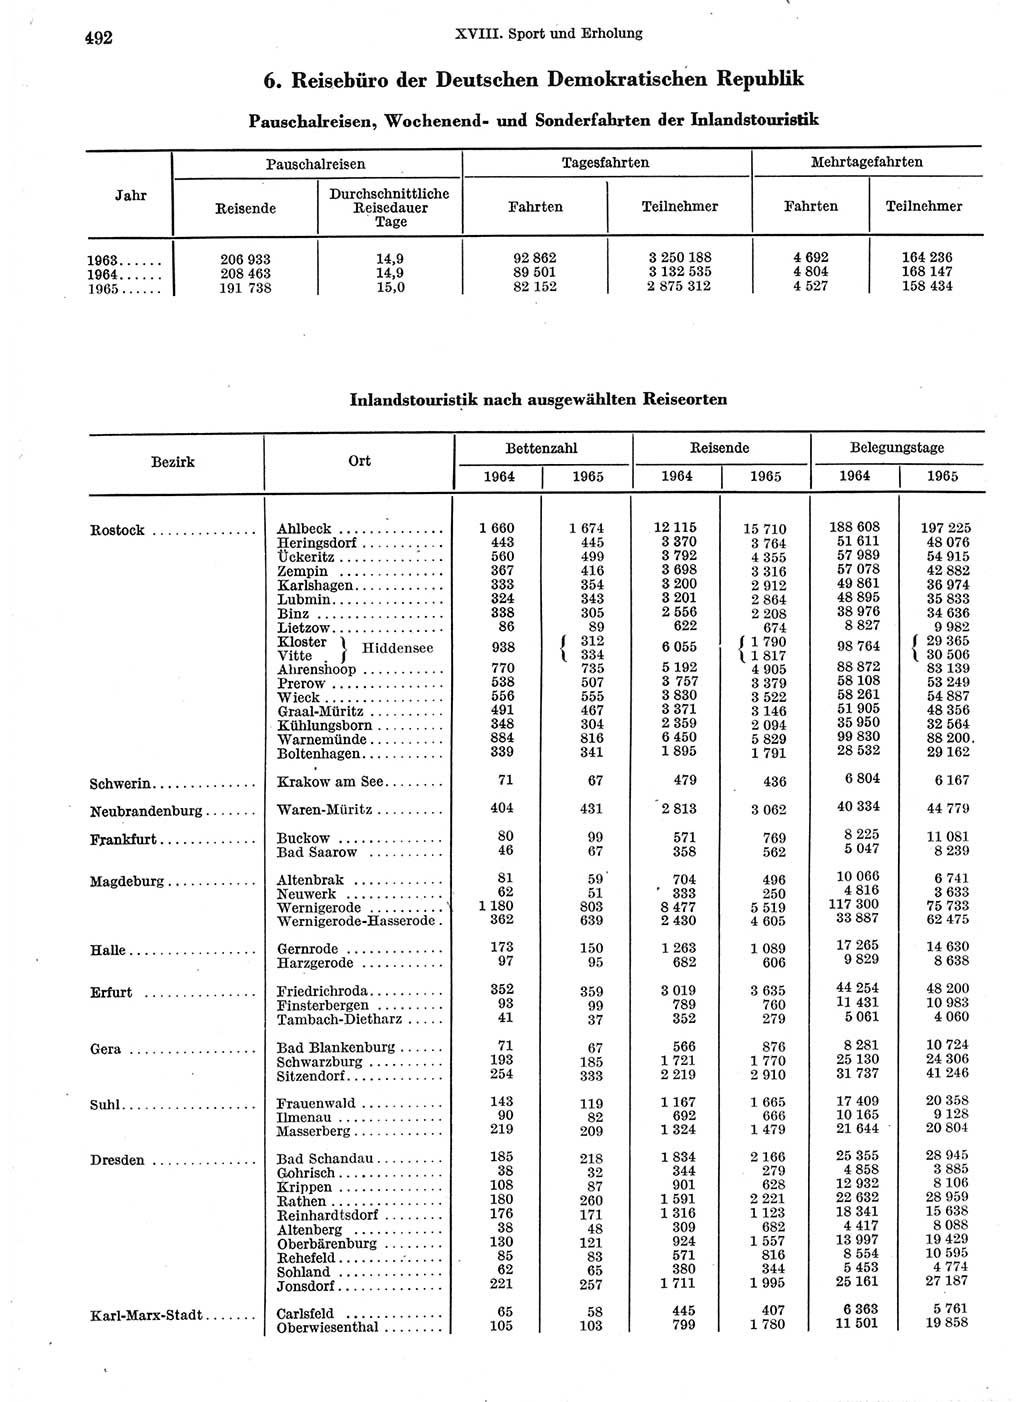 Statistisches Jahrbuch der Deutschen Demokratischen Republik (DDR) 1966, Seite 492 (Stat. Jb. DDR 1966, S. 492)